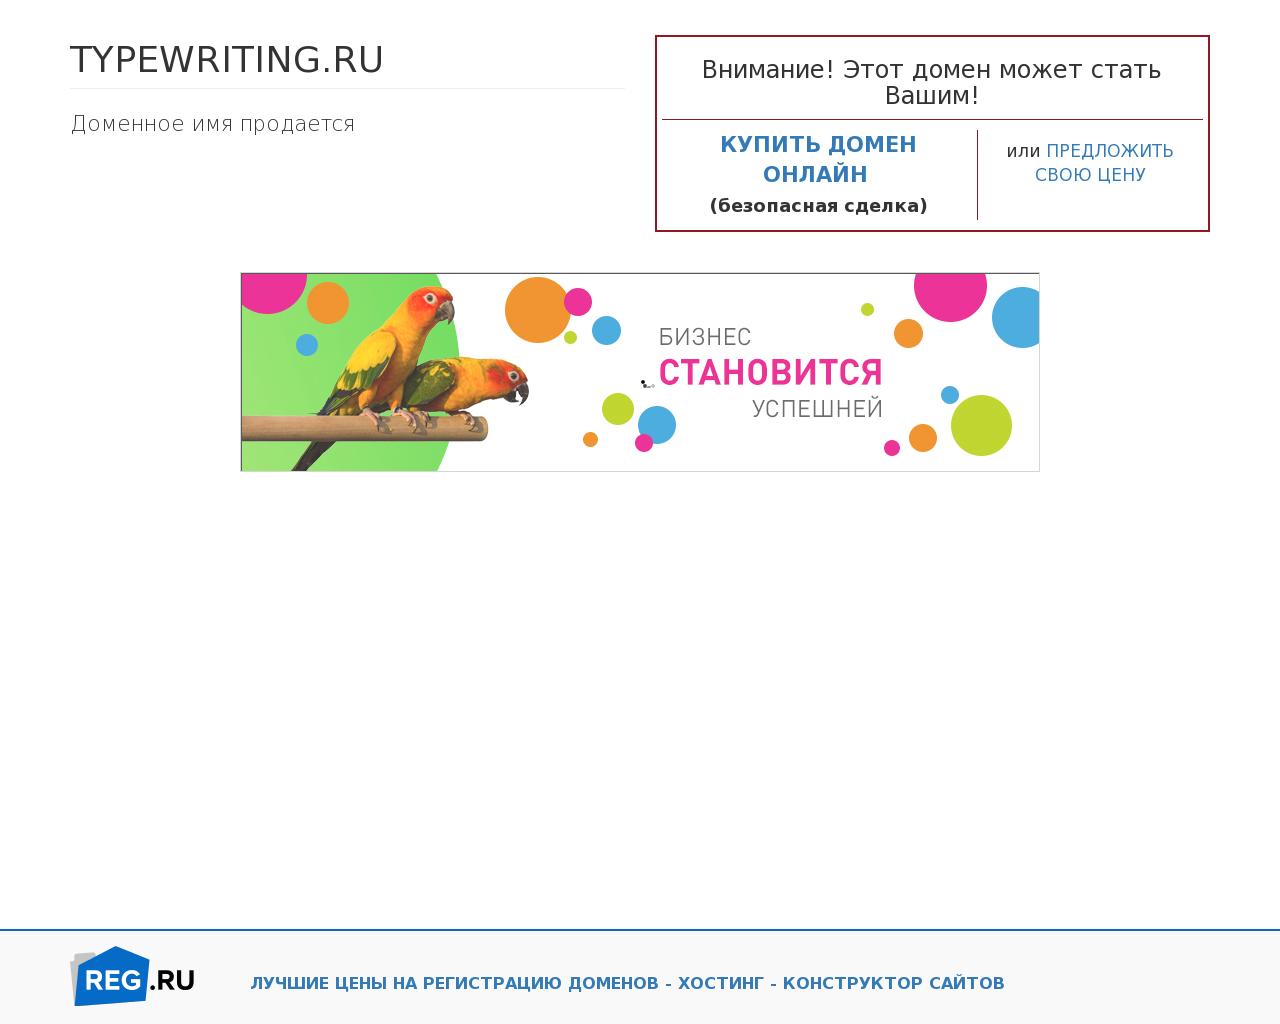 Изображение сайта typewriting.ru в разрешении 1280x1024